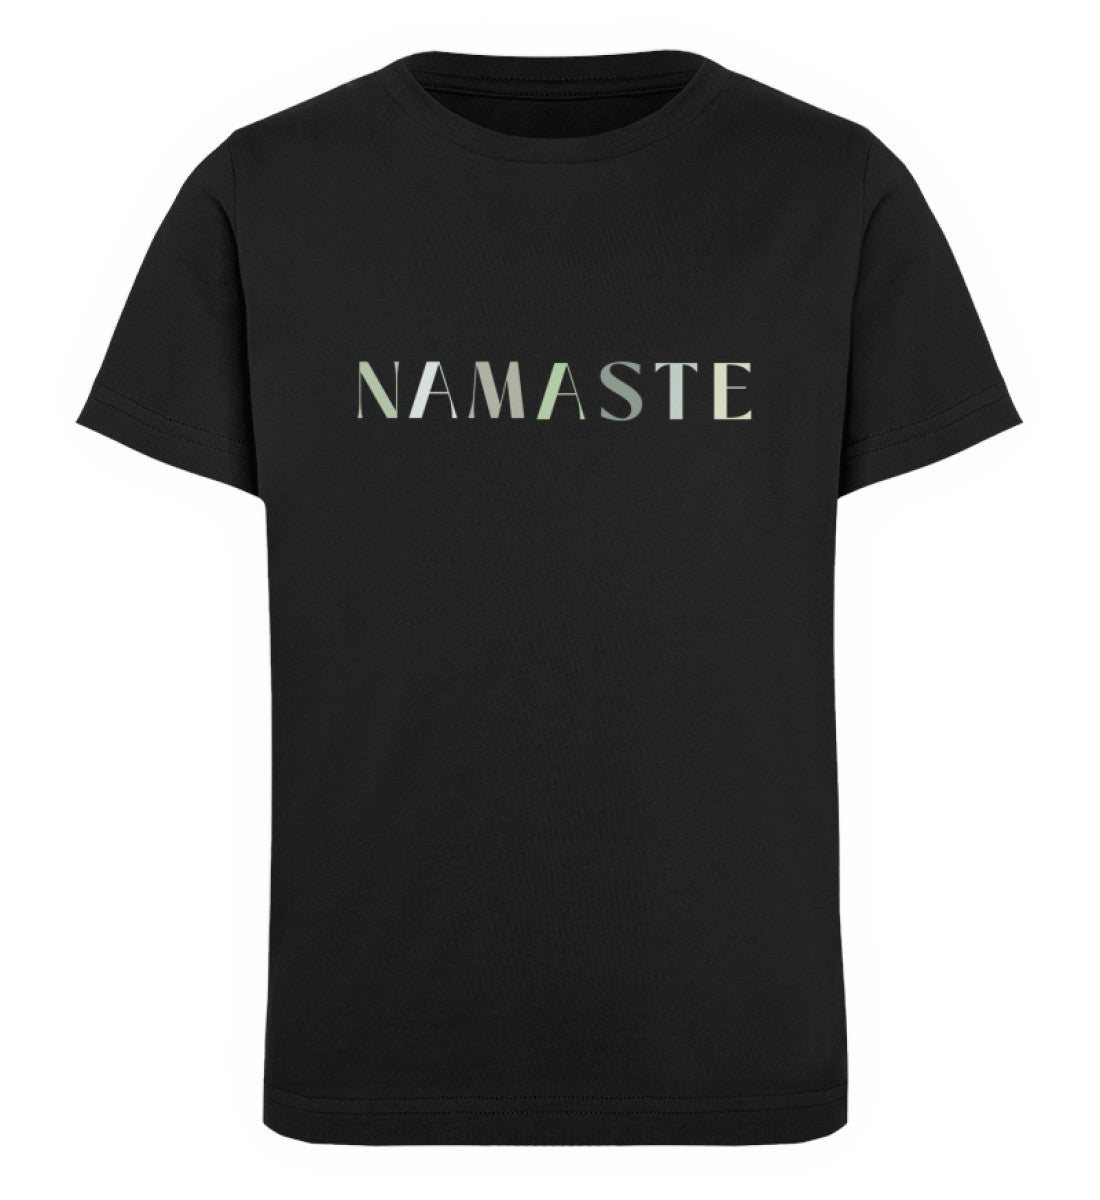 namaste l yoga t-shirt kinder schwarz l t-shirt bio-baumwolle l bio yoga Kleidung l umweltfreundlich leben mit ökologischer mode